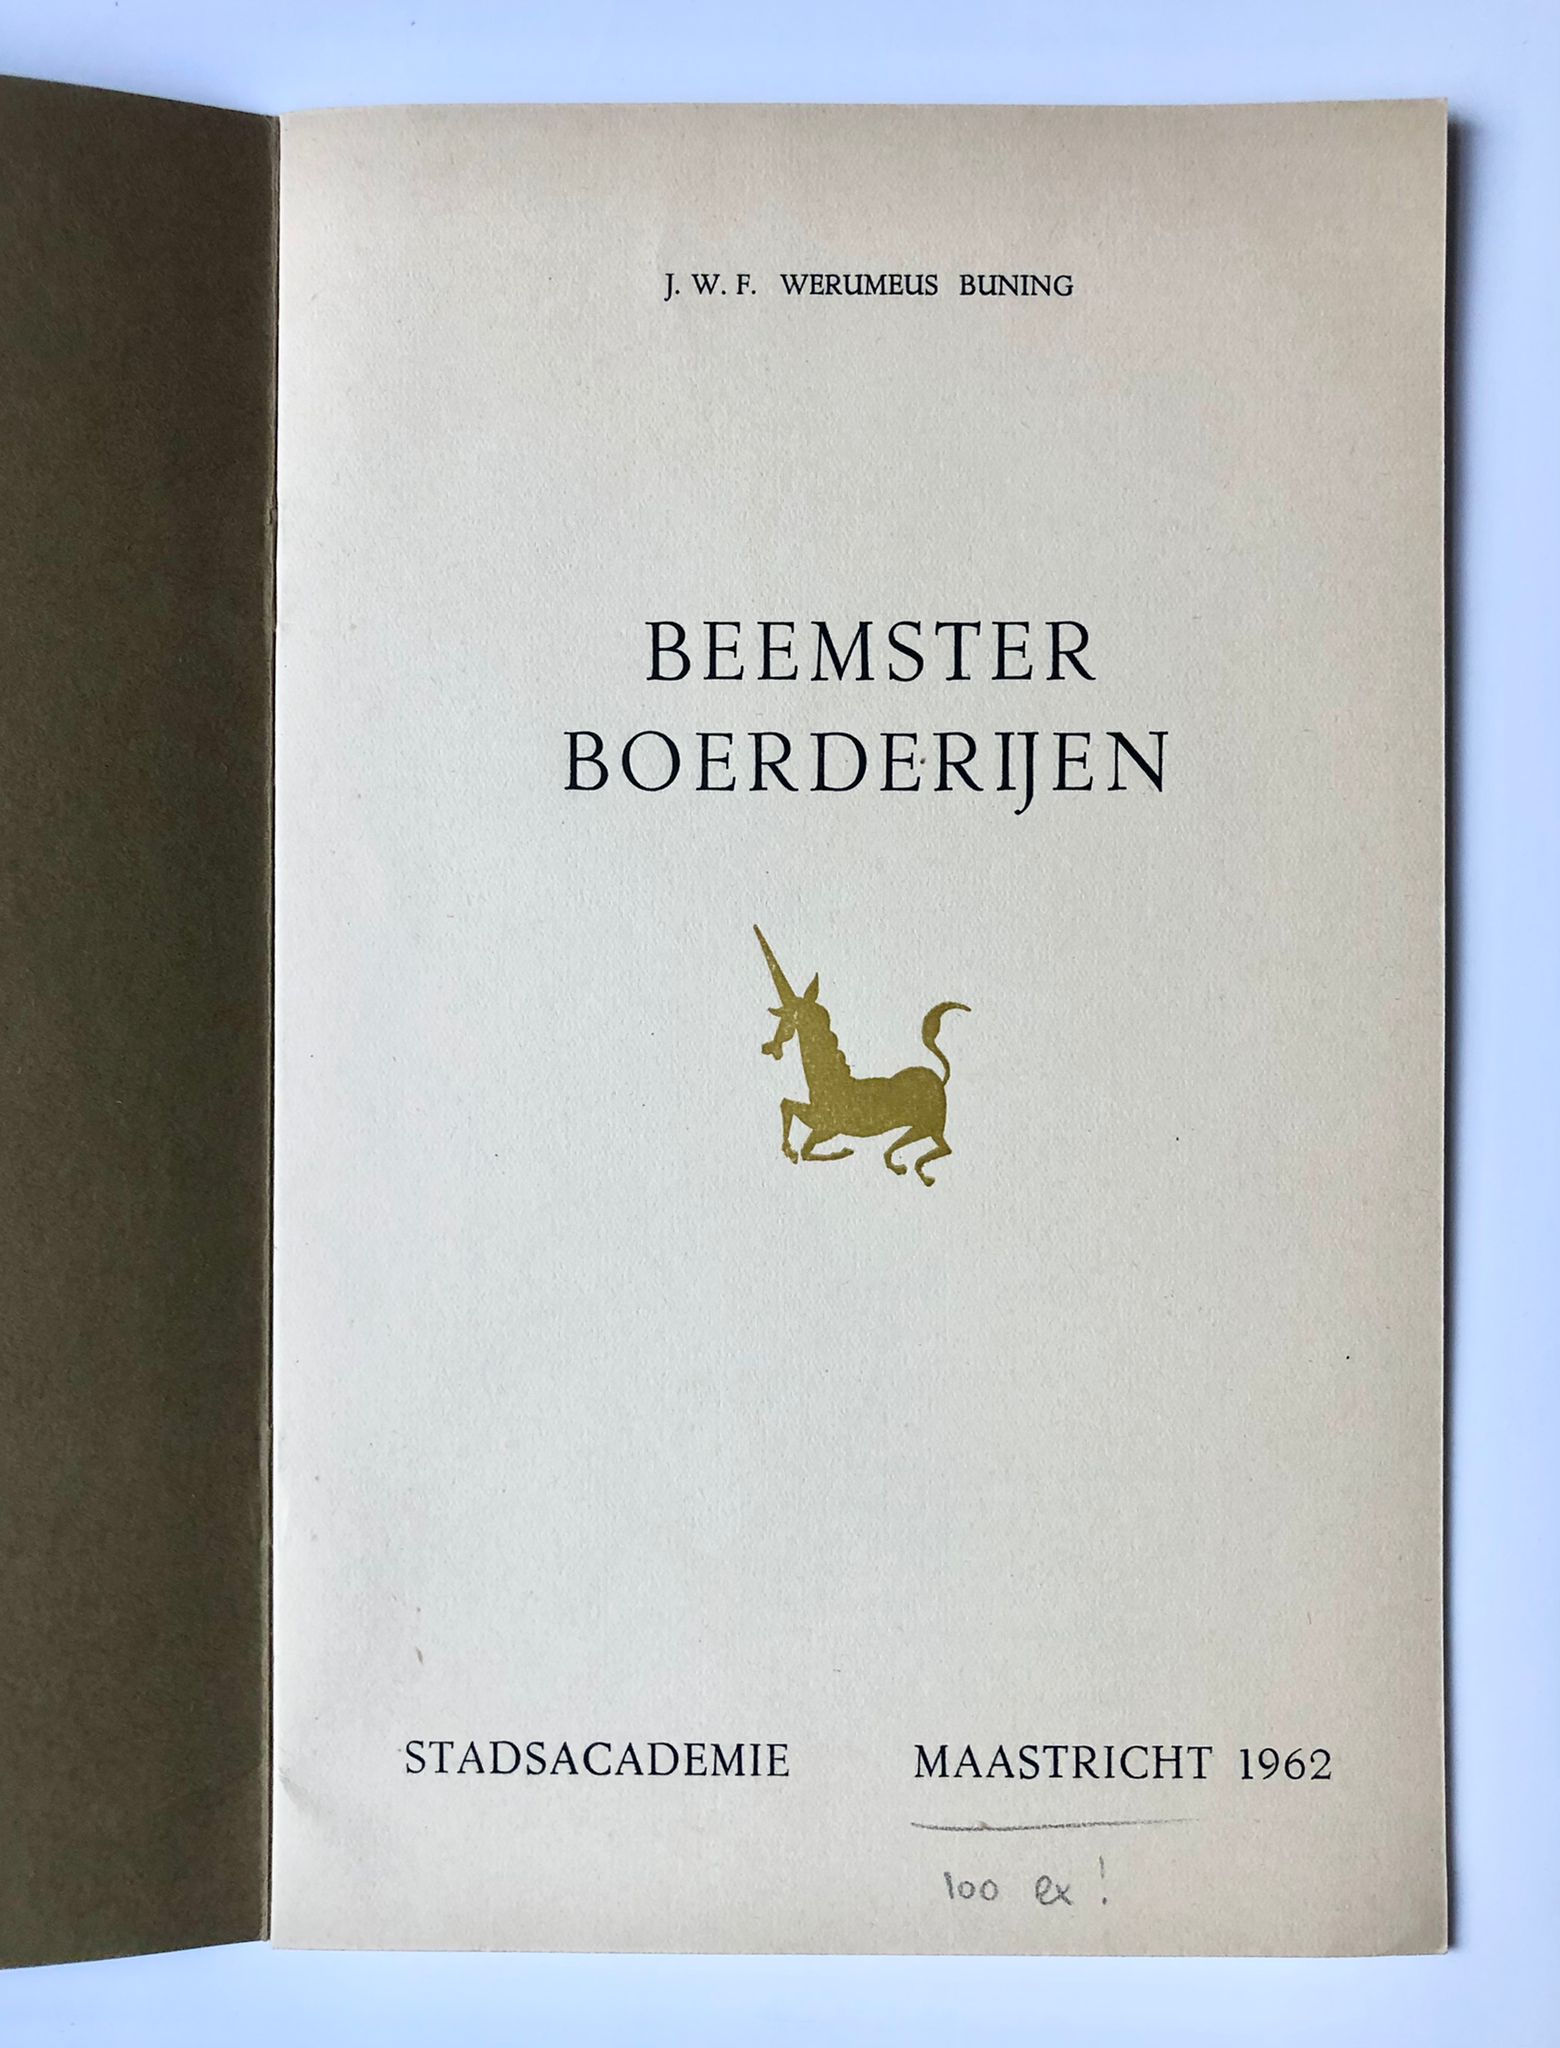 [Limited edition, farmhouses Beemster, 1962] Beemster Boerderijen, J. W. F. Werumeus Buning, Stadsacademie, Maastricht 1962, Gedrukt bij de C. V. Drukkerij v.h. Cl. Goffin (1 of 100 copies), 8 pp.